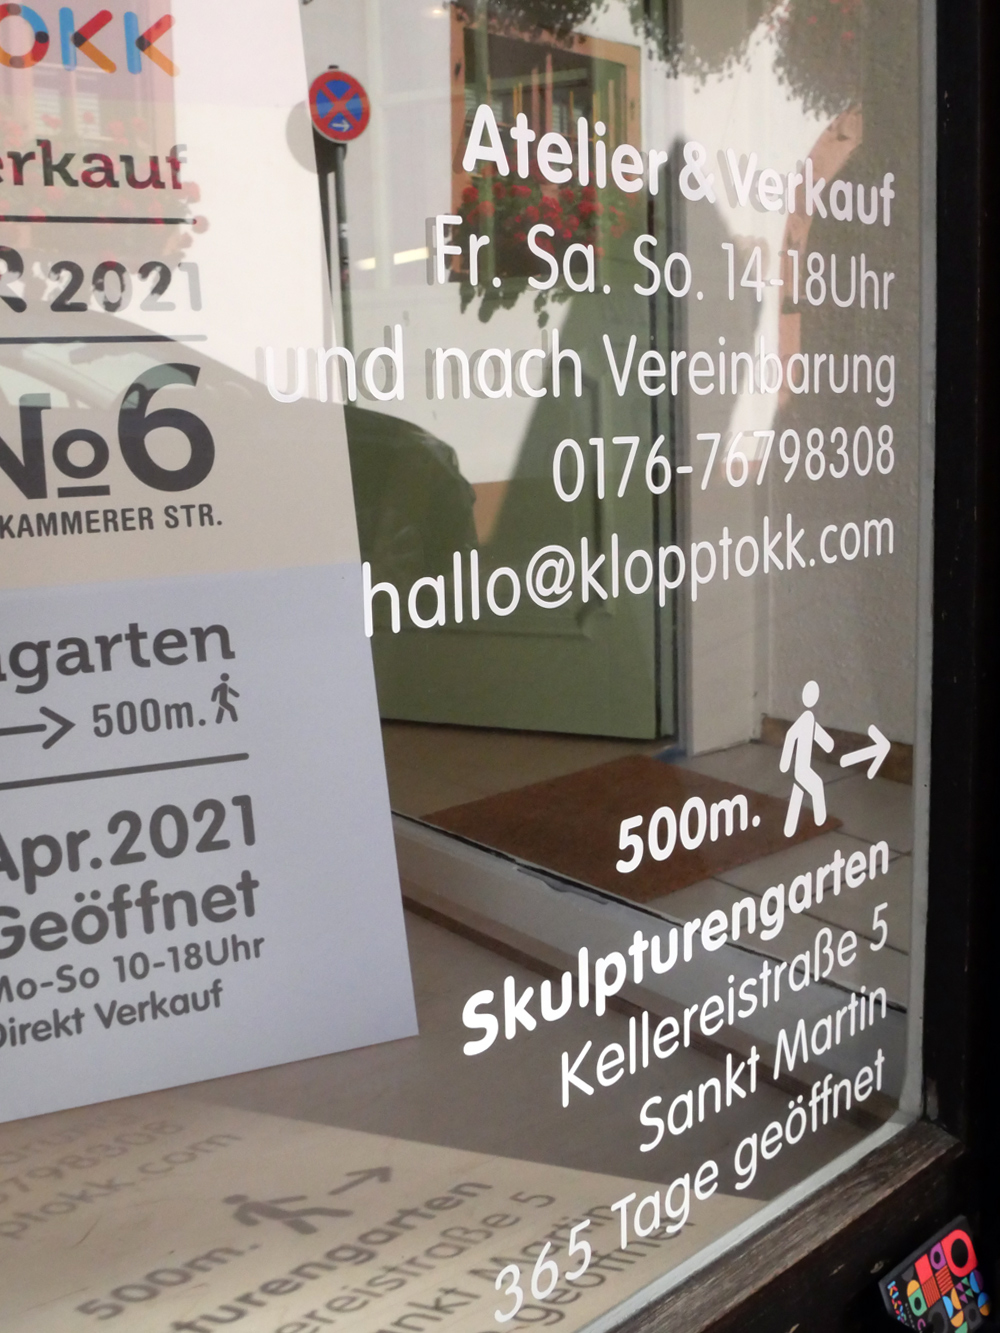 Atelier & Verkauf Bildhauerei KloppTokk Maikammerer Straße 6 Sankt Martin Südlichen Weinstraße